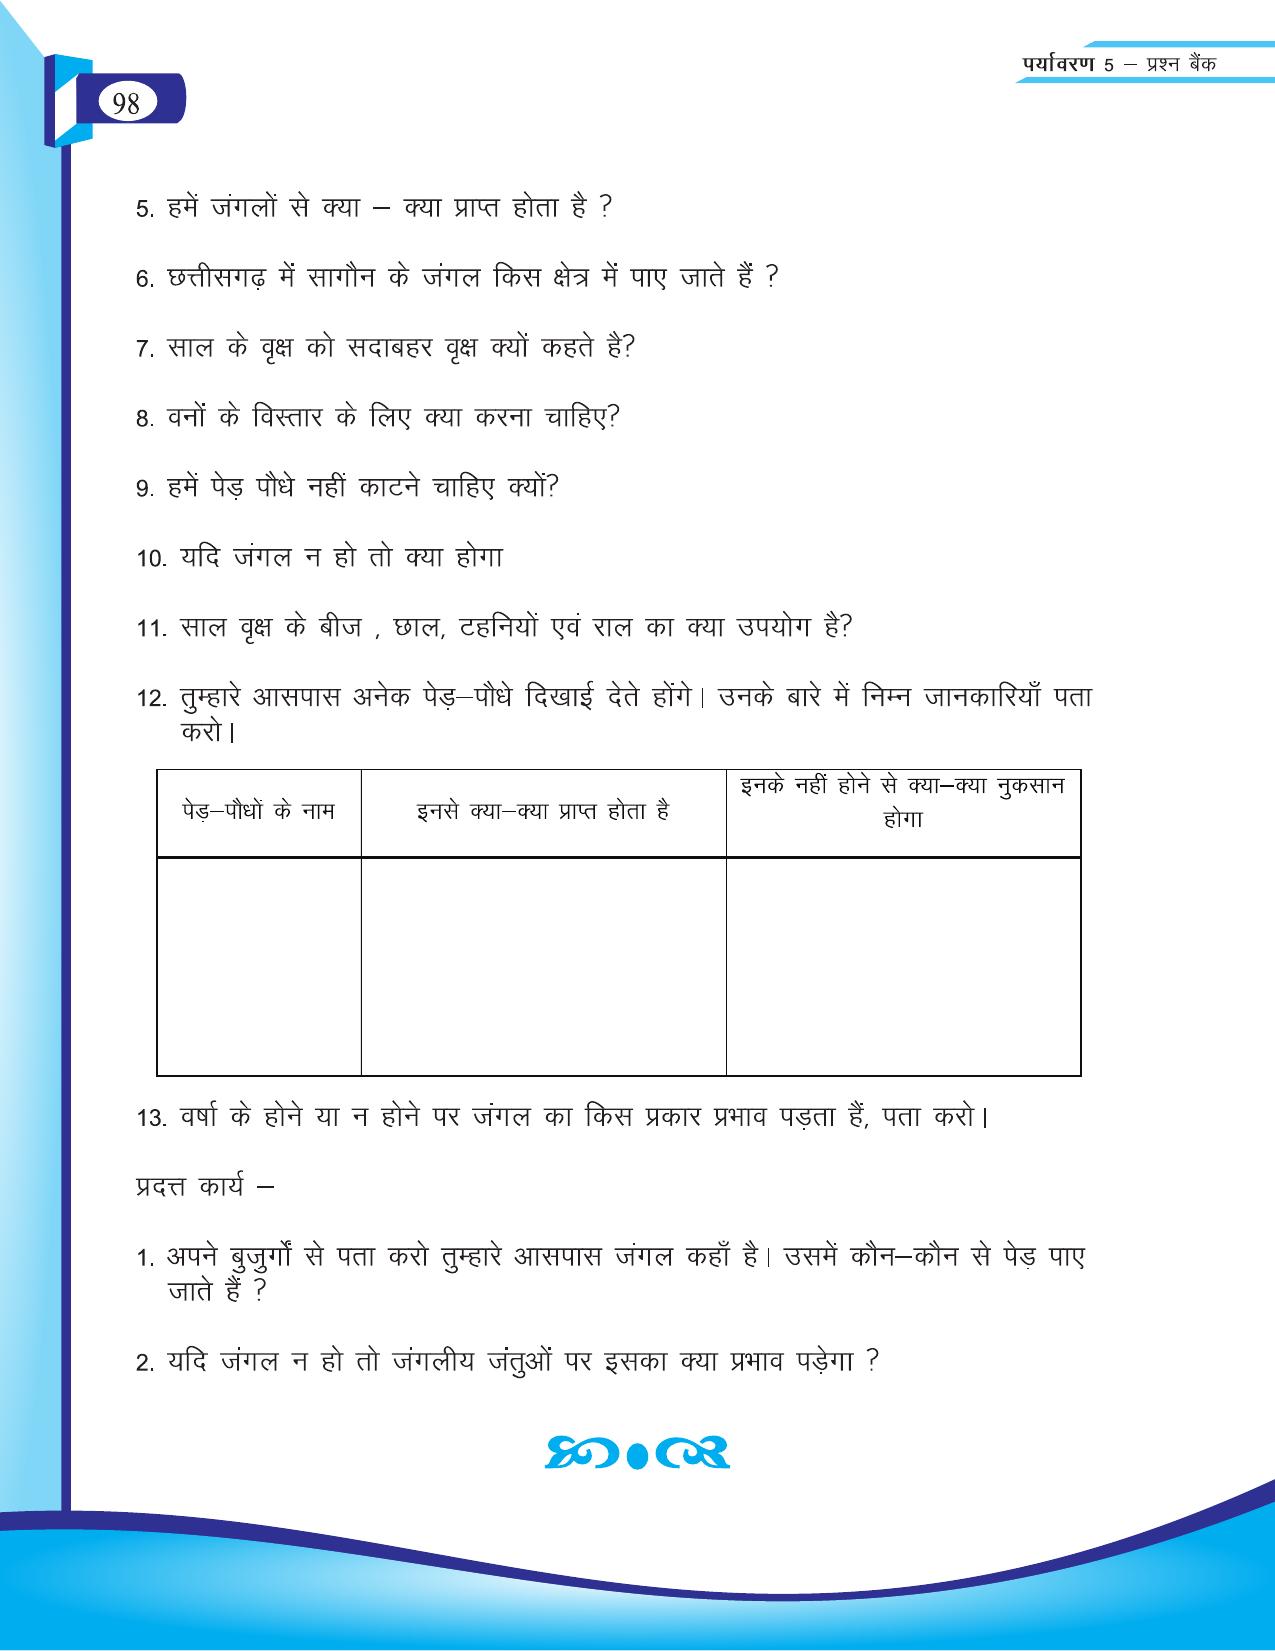 Chhattisgarh Board Class 5 EVS Question Bank 2015-16 - Page 24